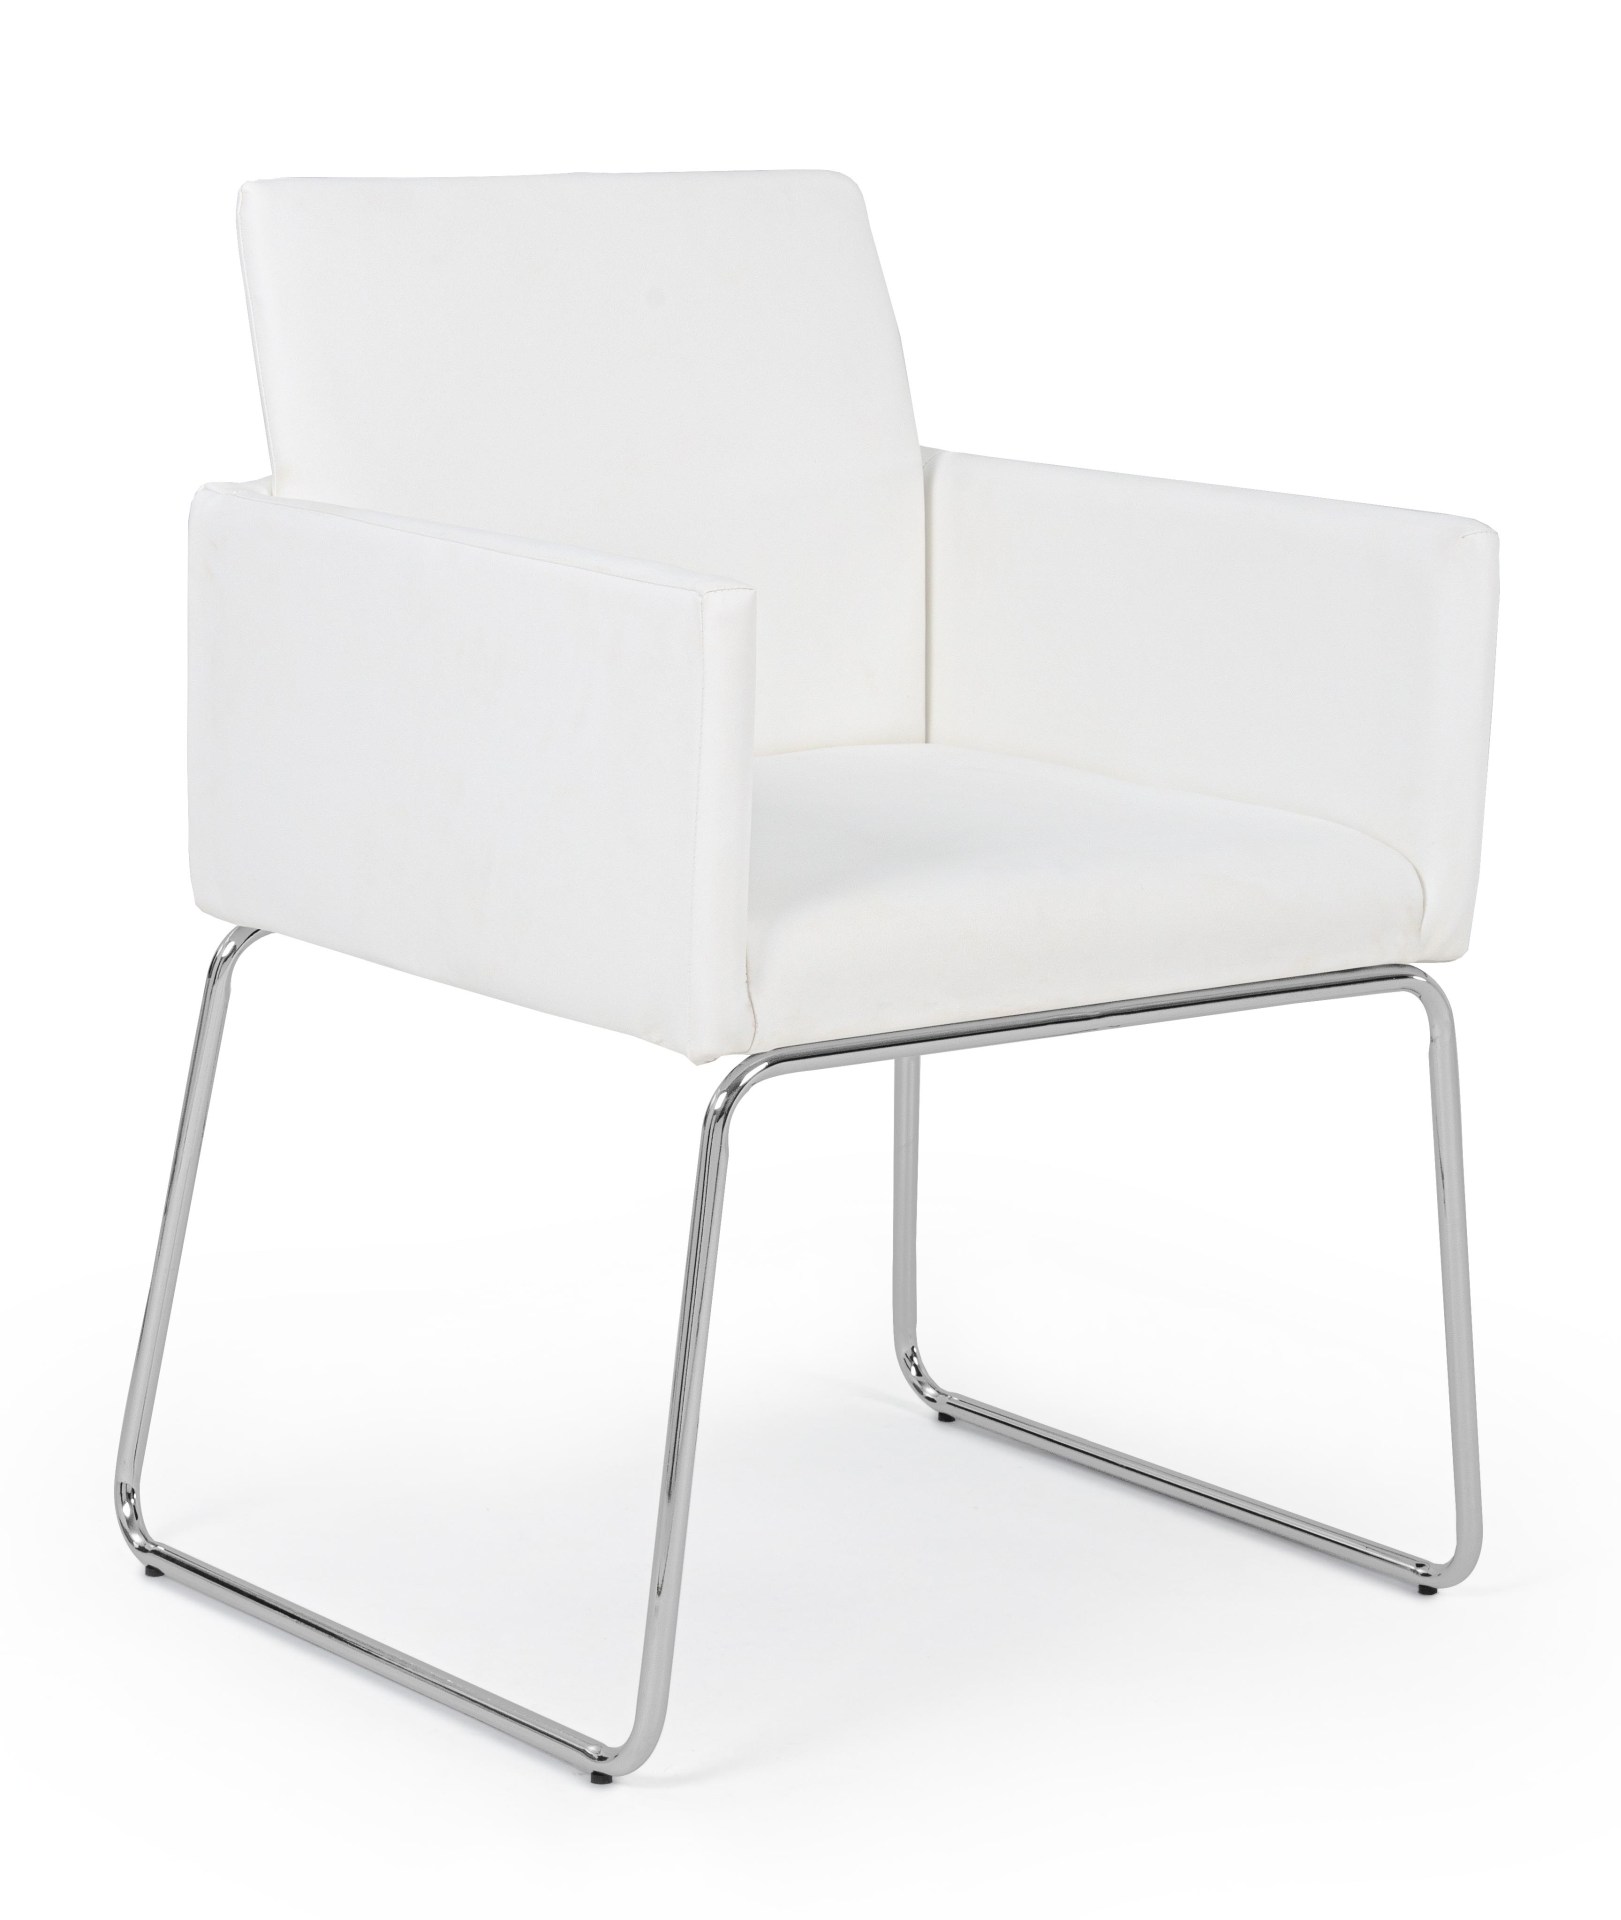 Der Esszimmerstuhl Sixty überzeugt mit seinem modernem Design. Gefertigt wurde der Stuhl aus Kunststoff-Bezug welcher einen weißen Farbton besitzt. Das Gestell ist aus Metall und ist Silber. Die Sitzhöhe beträgt 48 cm.